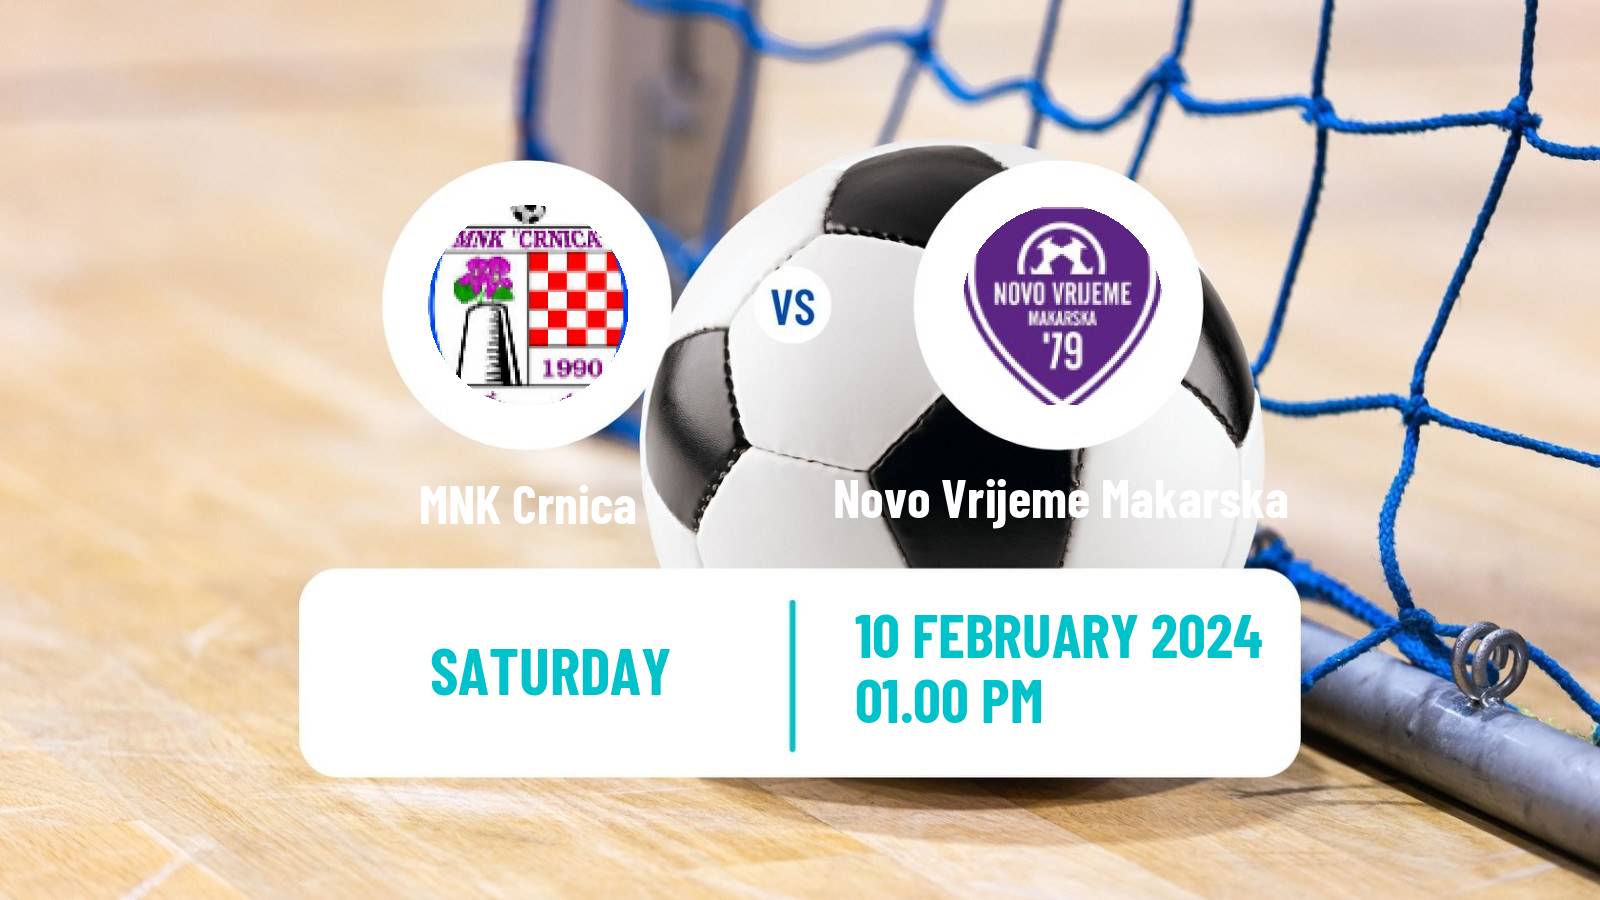 Futsal Croatian 1 HMNL Crnica - Novo Vrijeme Makarska